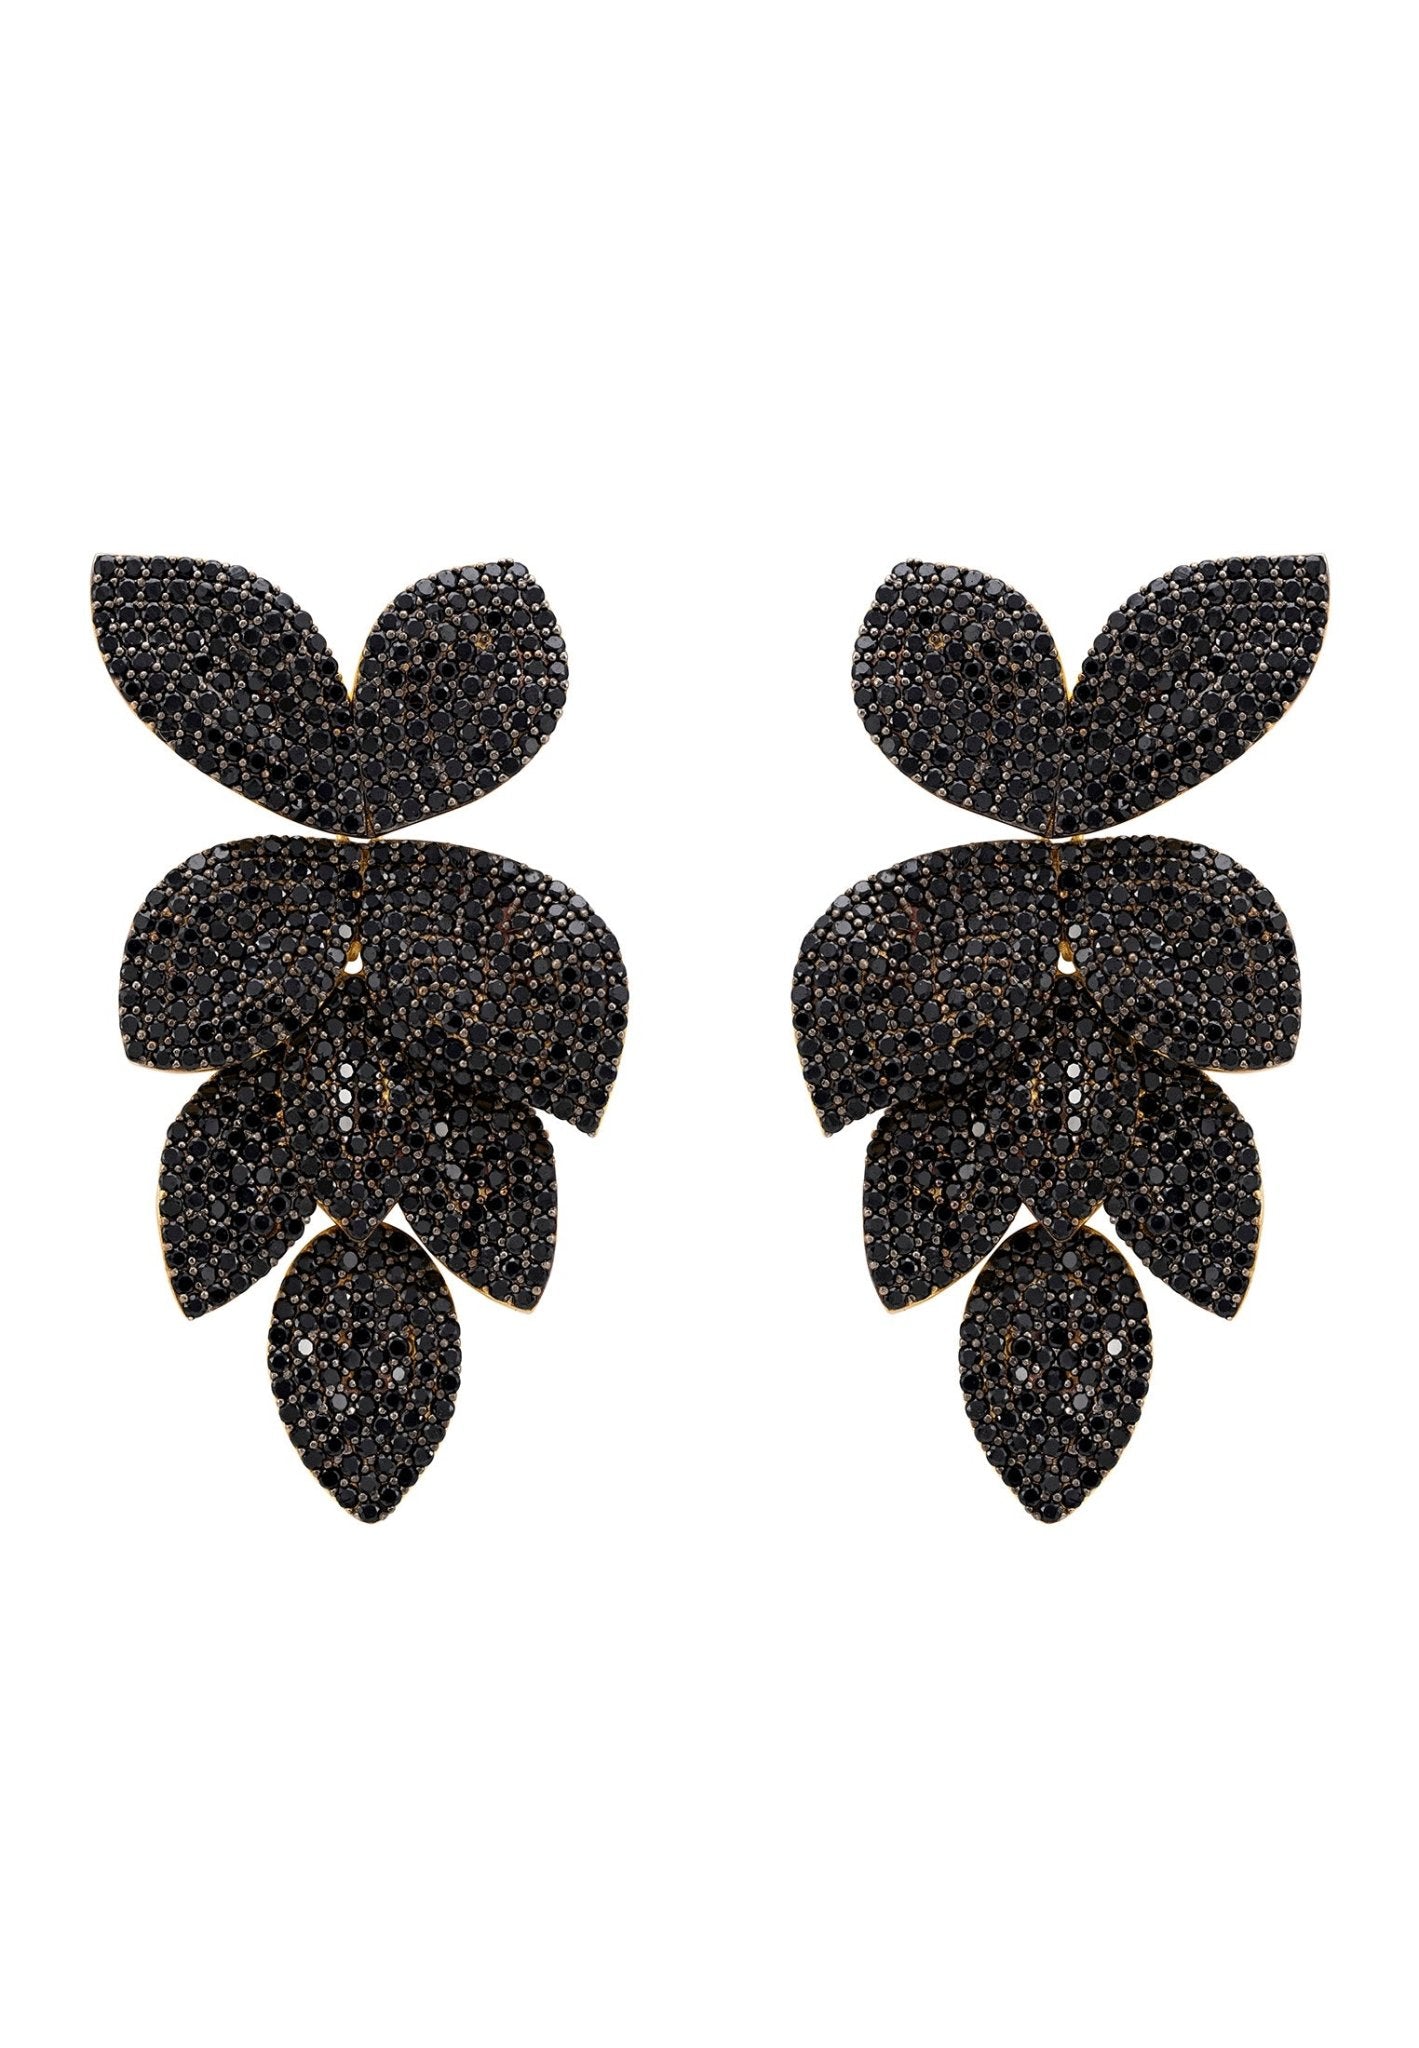 Petal Cascading Flower Earrings Gold Black Cz - LATELITA Earrings